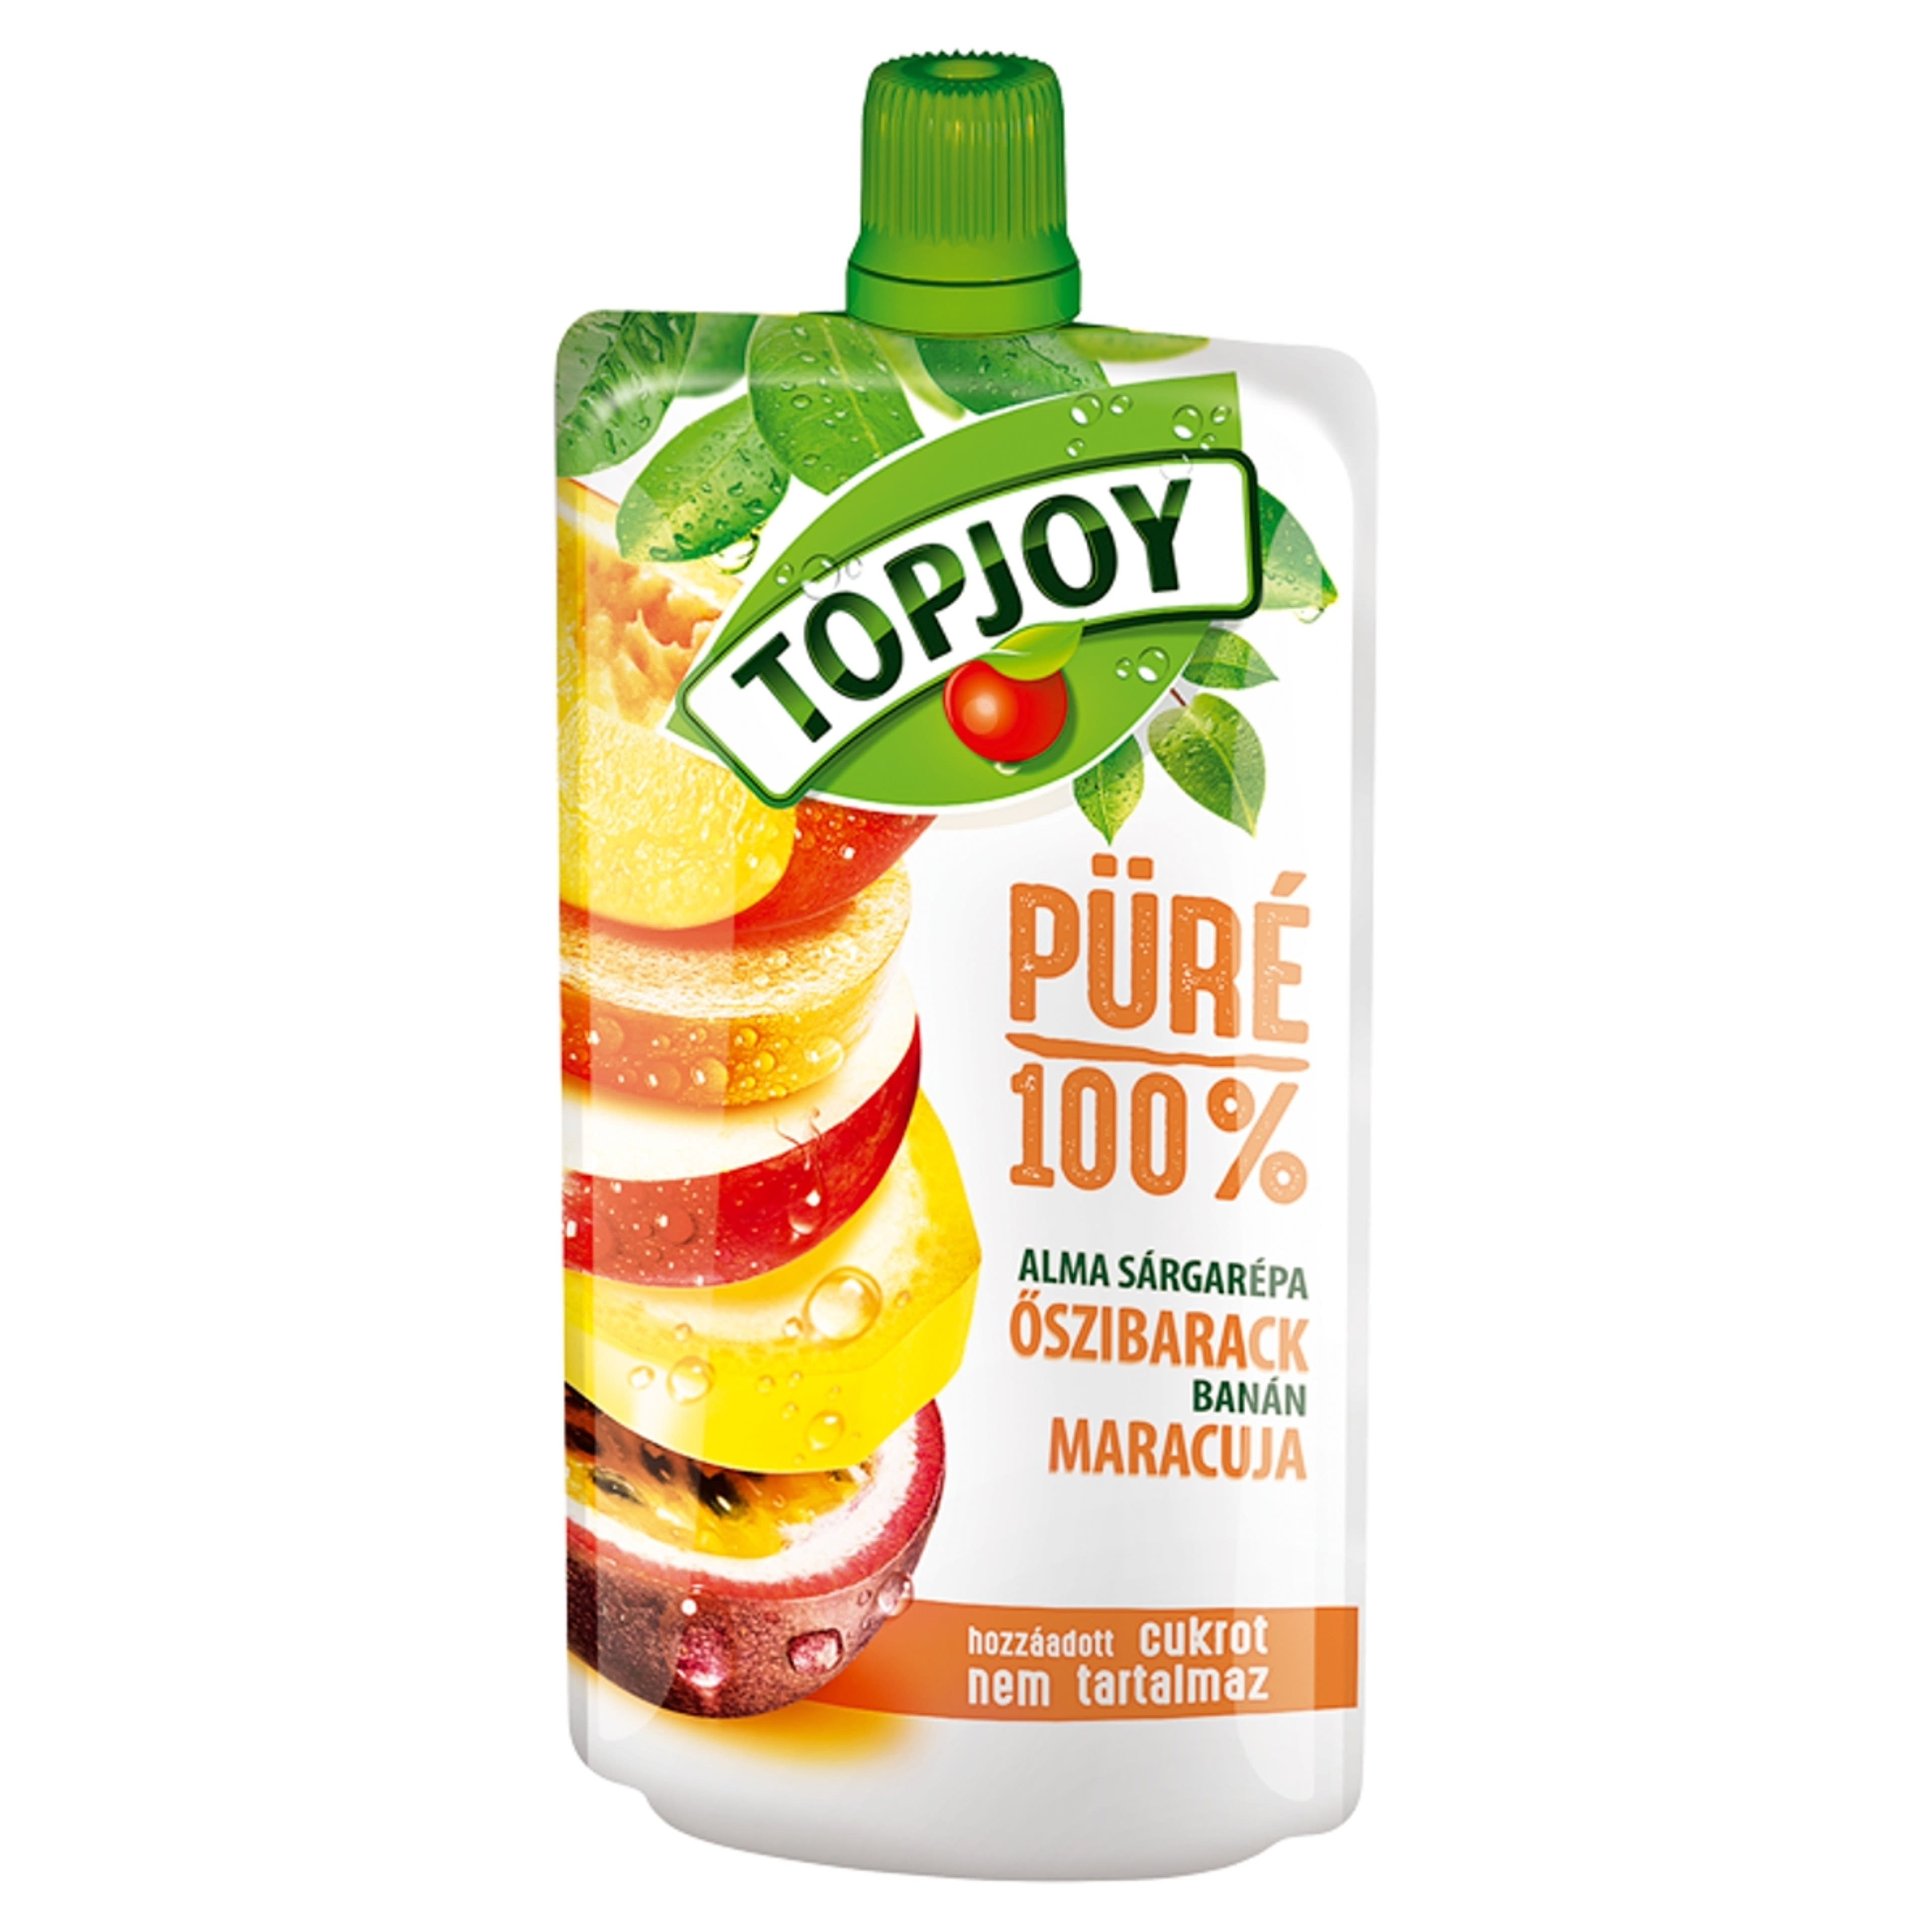 Topjoy pure oszi-maracuja - 120 g